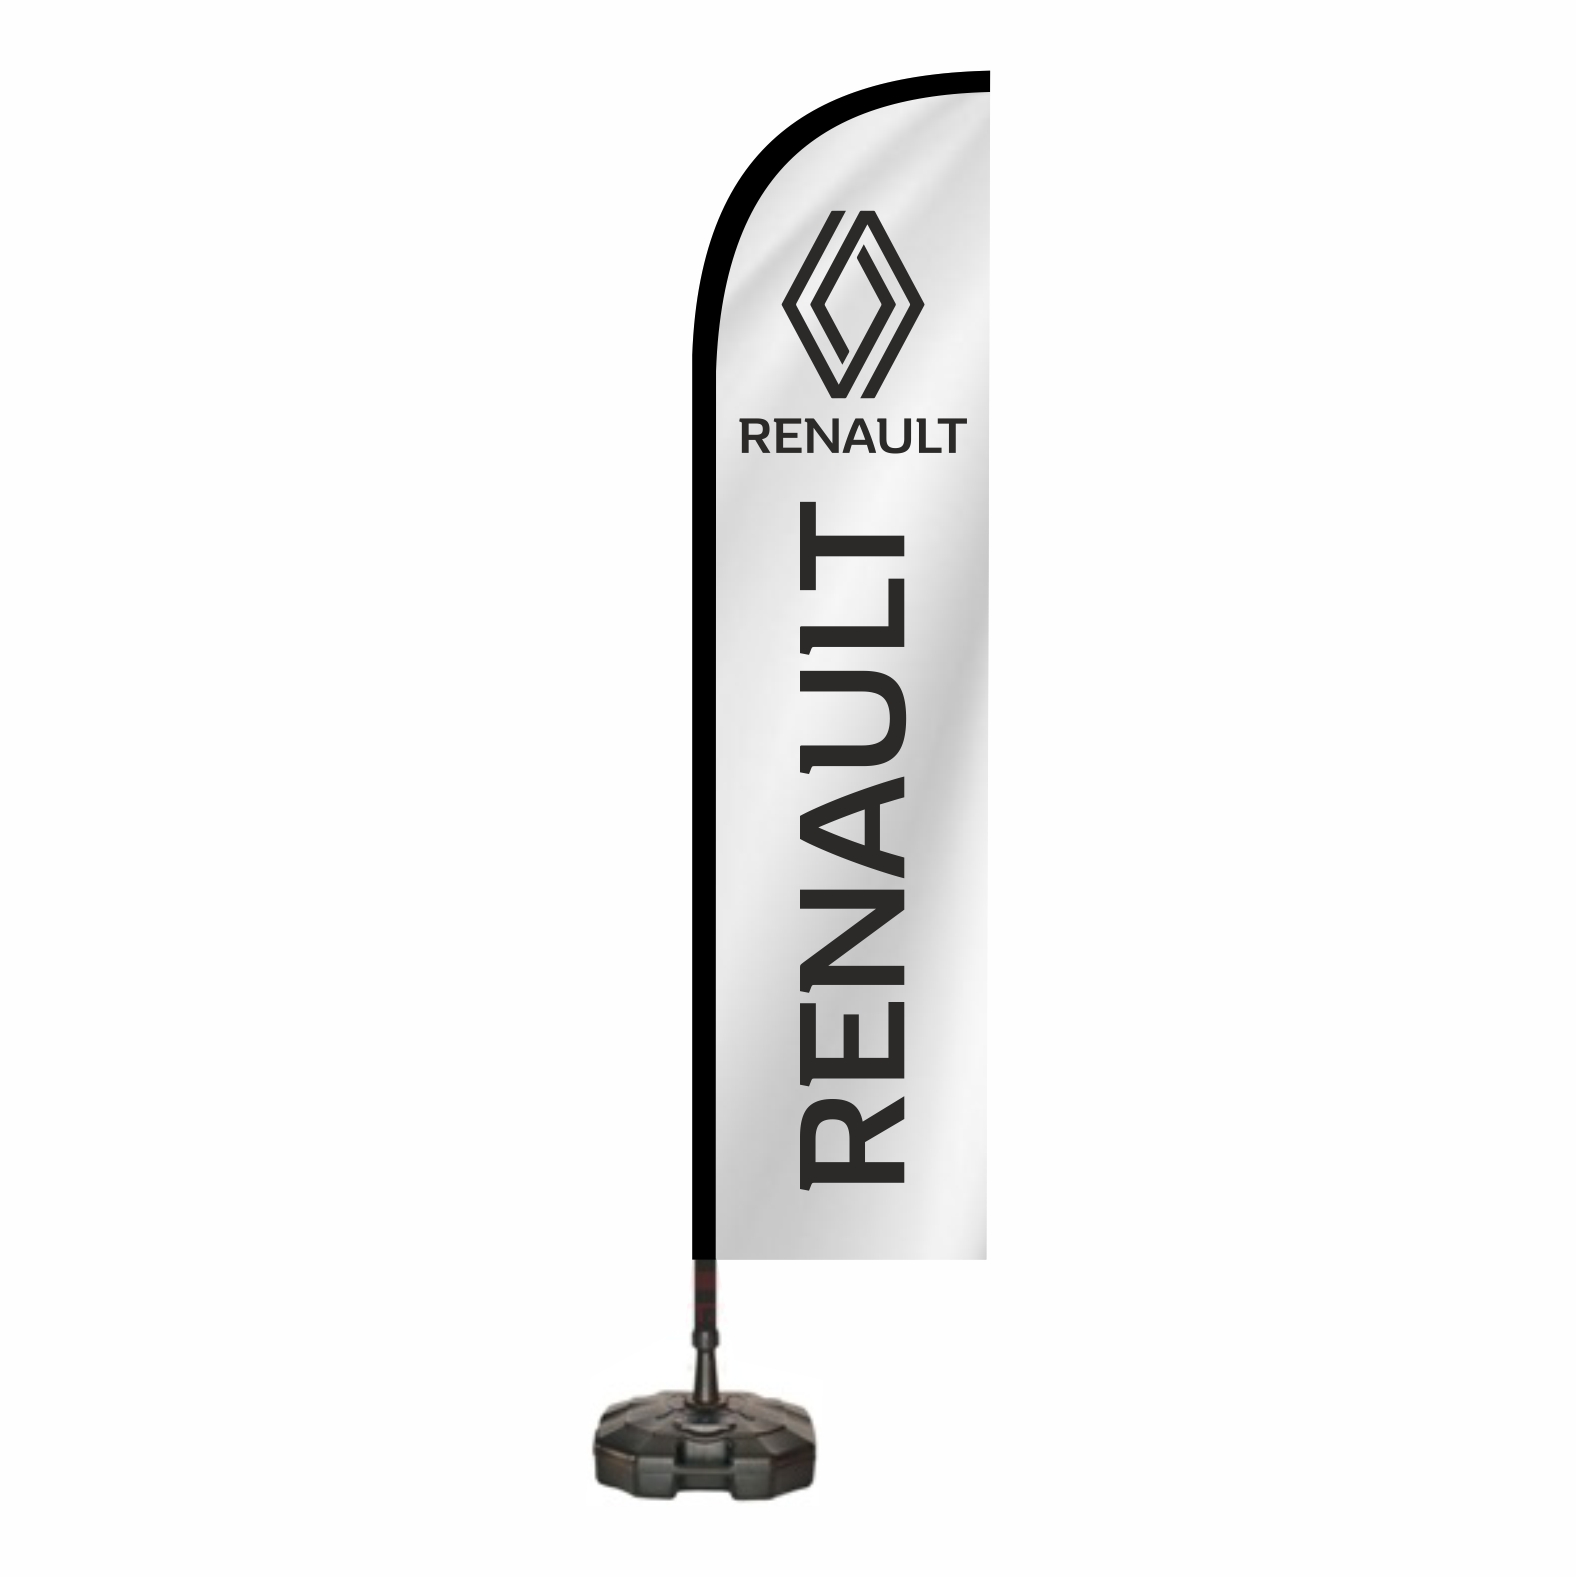 Renault Oltal Bayra imalat